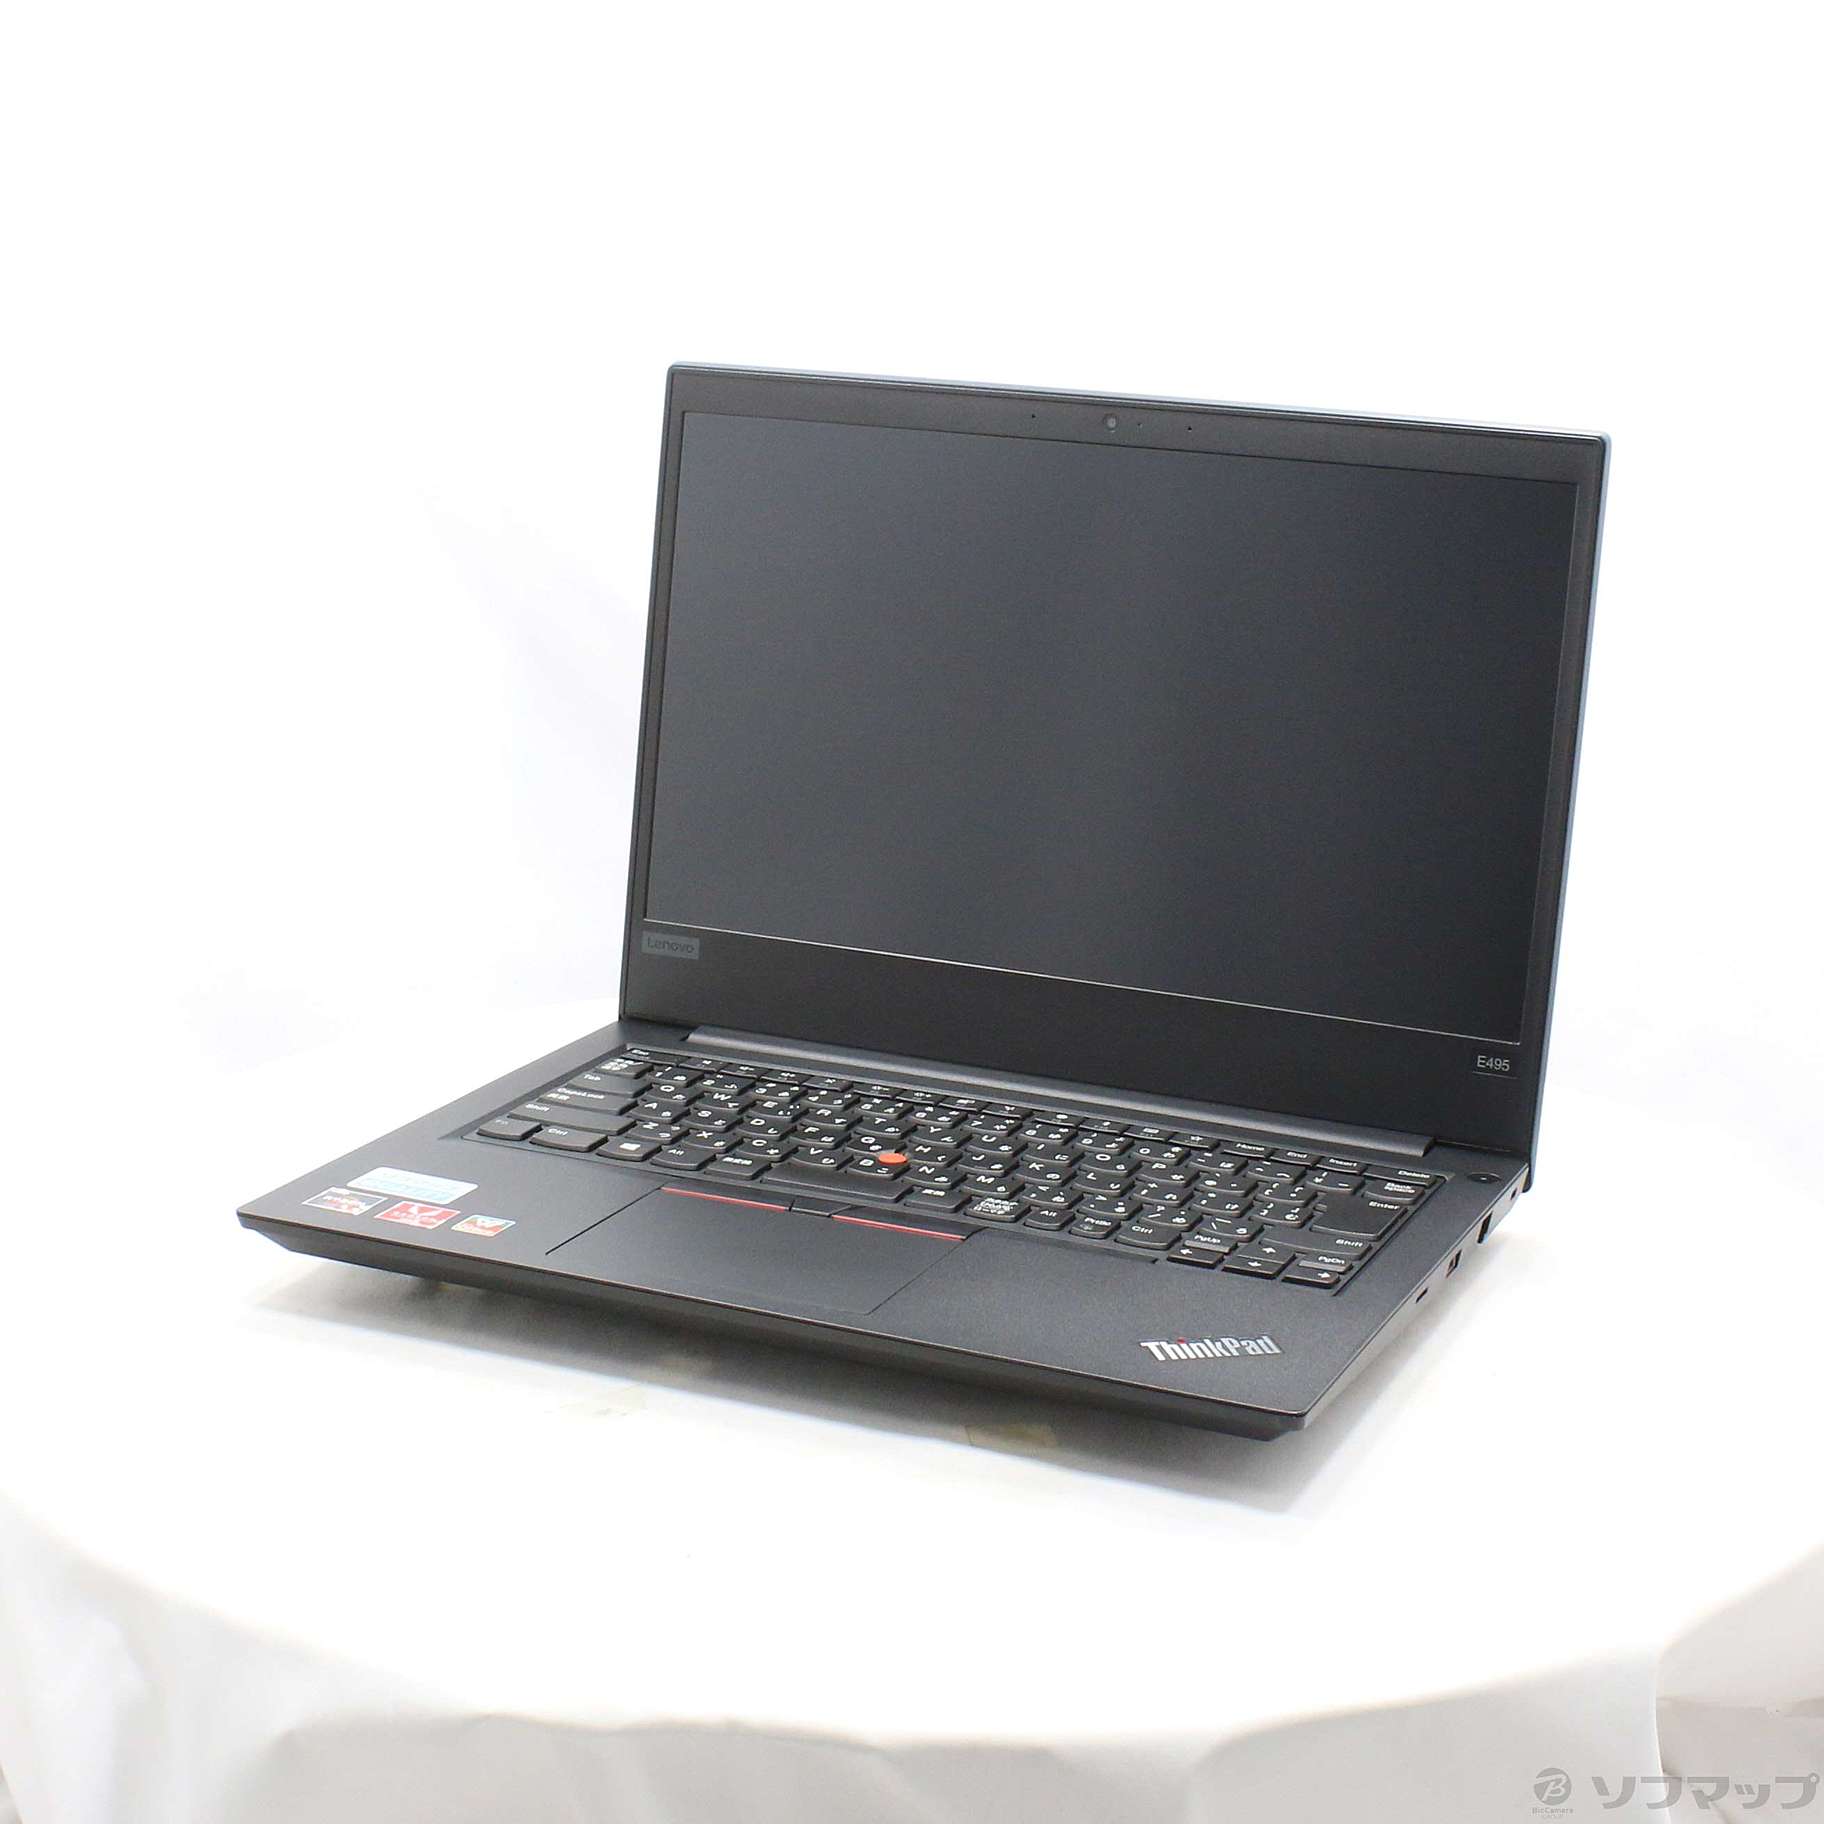 ThinkPad E495